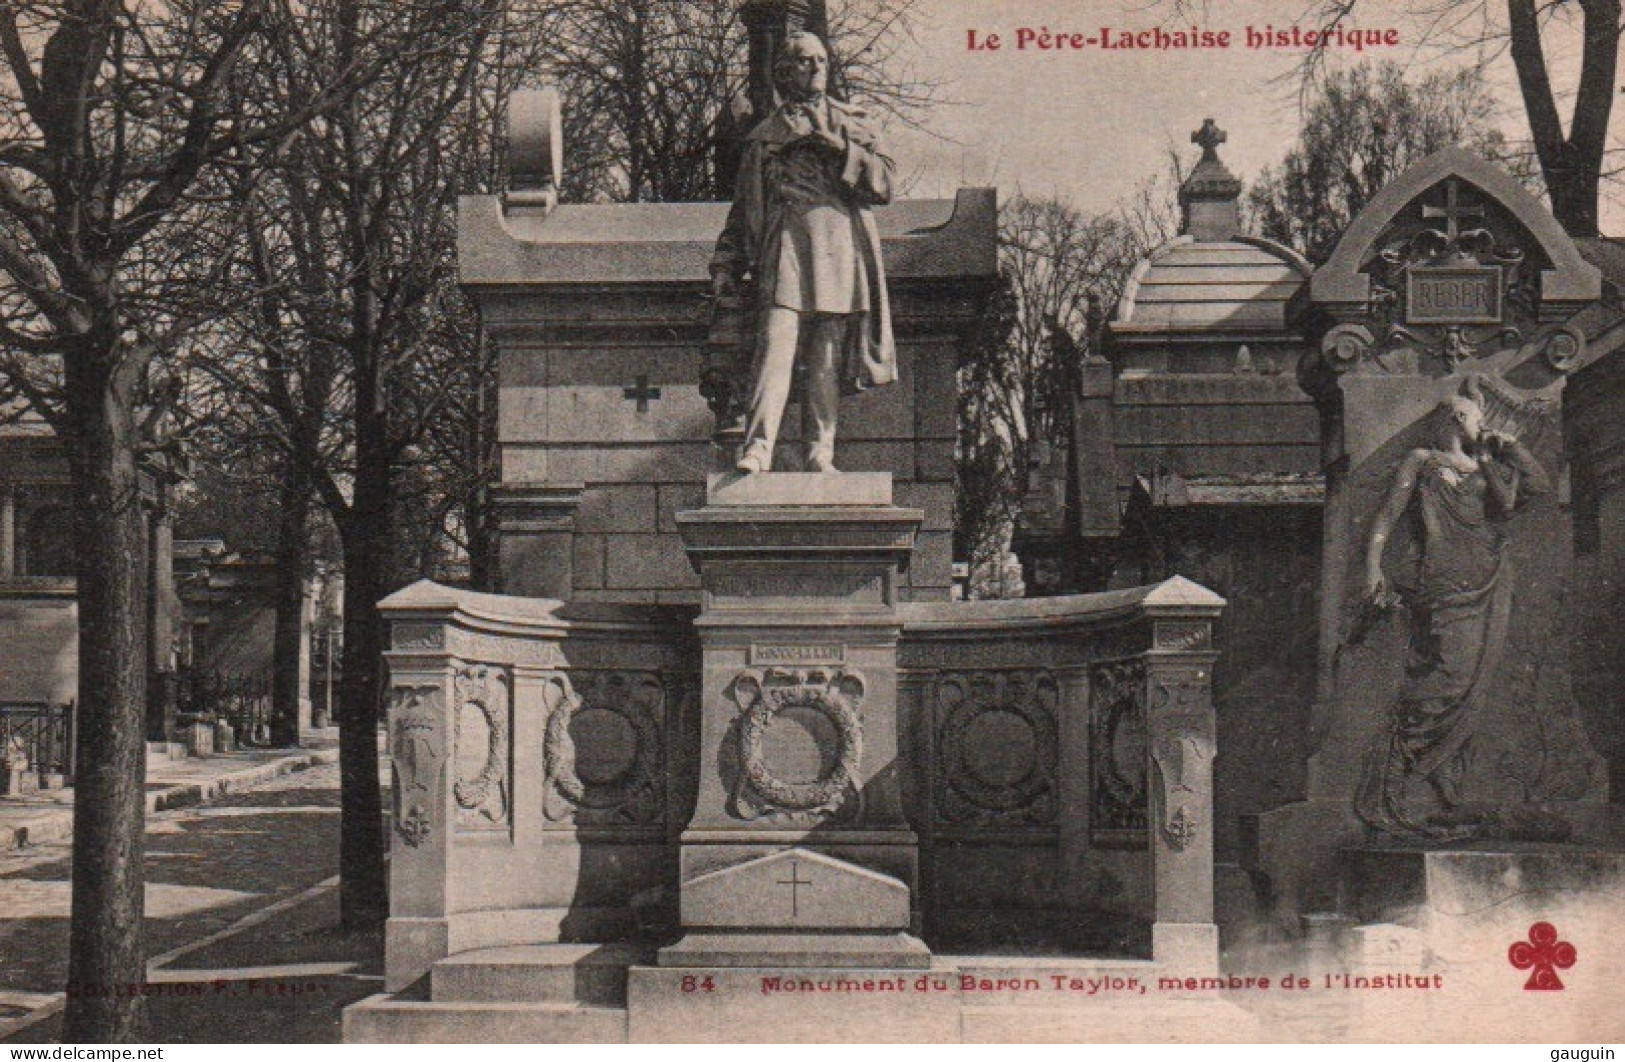 CPA - PARIS - Cimetière PÈRE-LACHAISE - Monument De Baron TAYLOR Membre De L'Institut - Edition C.C.C.C - Statue